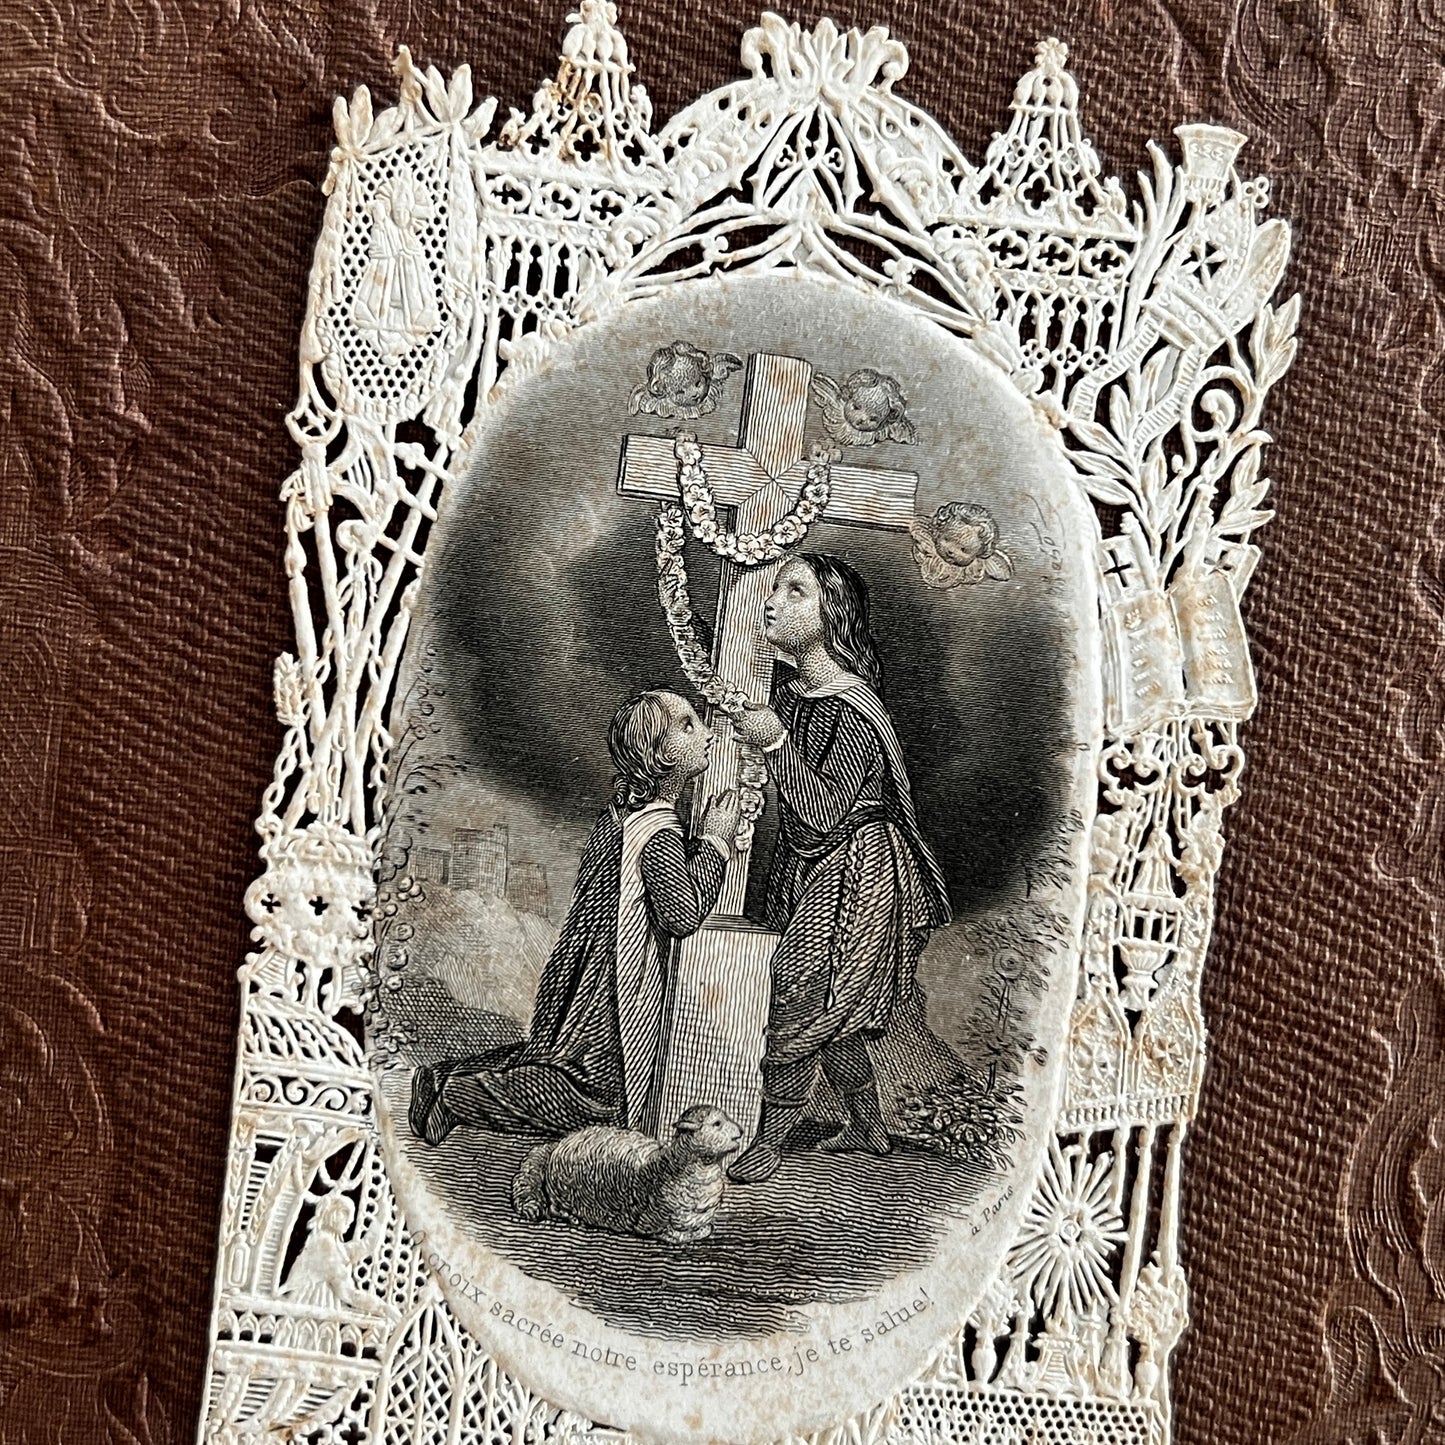 Antique French Holy Prayer Card - "O Croix sacrée, notre espérance, je te salue!"